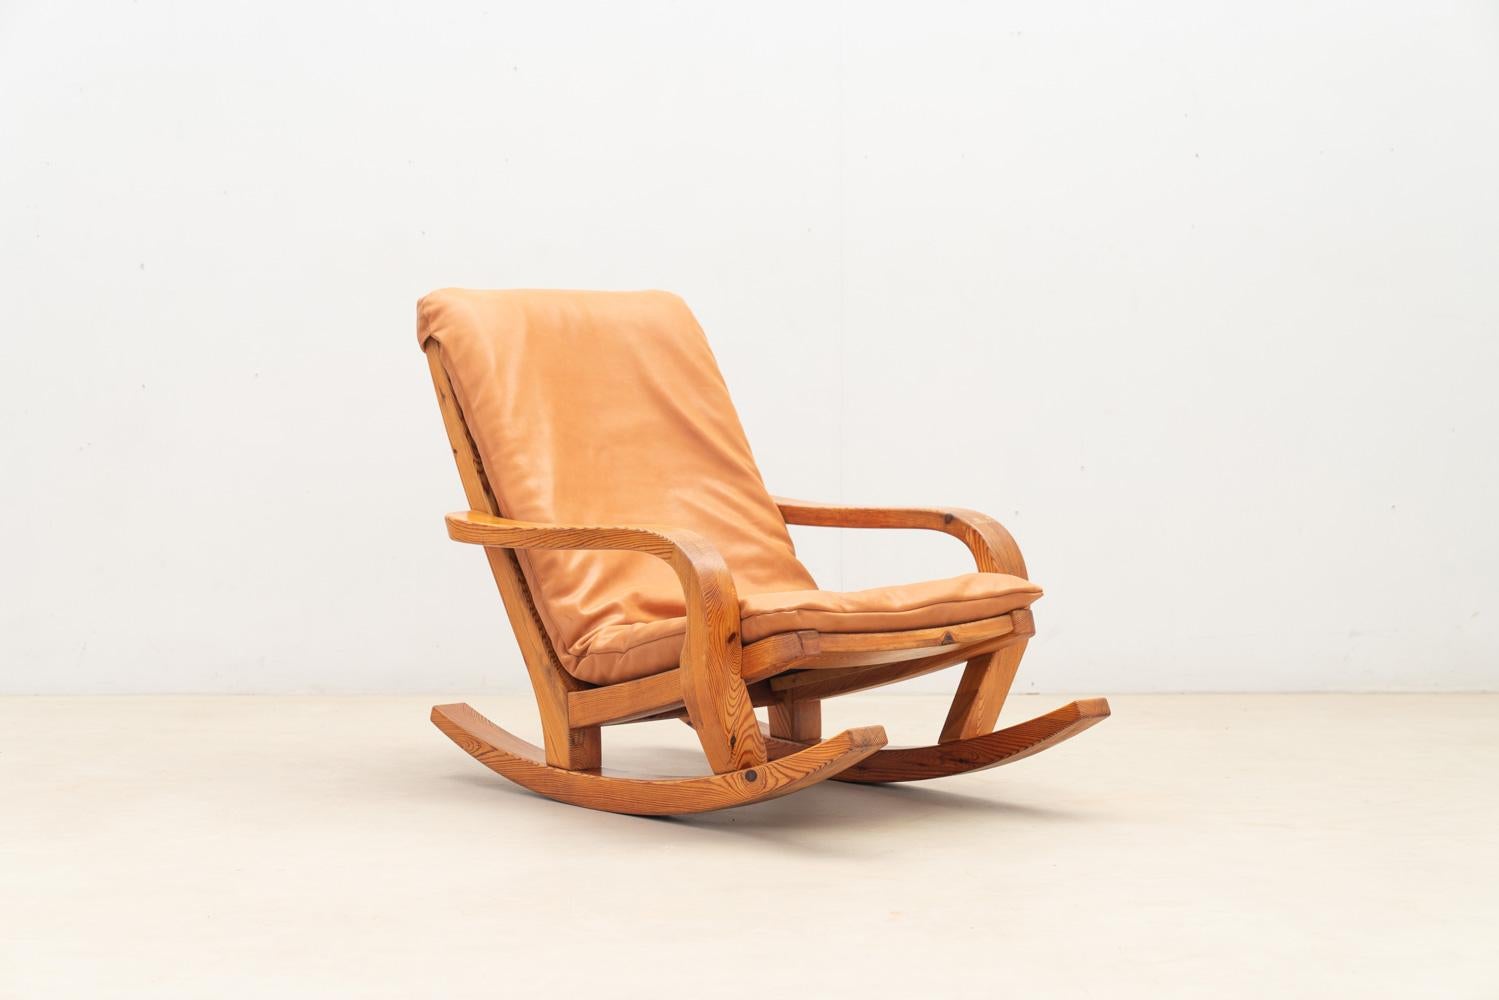 Retournez dans la France des années 1970 avec cette chaise à bascule. Solidement construit en pin, il est recouvert d'un coussin en cuir neuf de haute qualité.

N'hésitez pas à nous contacter pour toute information complémentaire. Nous nous ferons